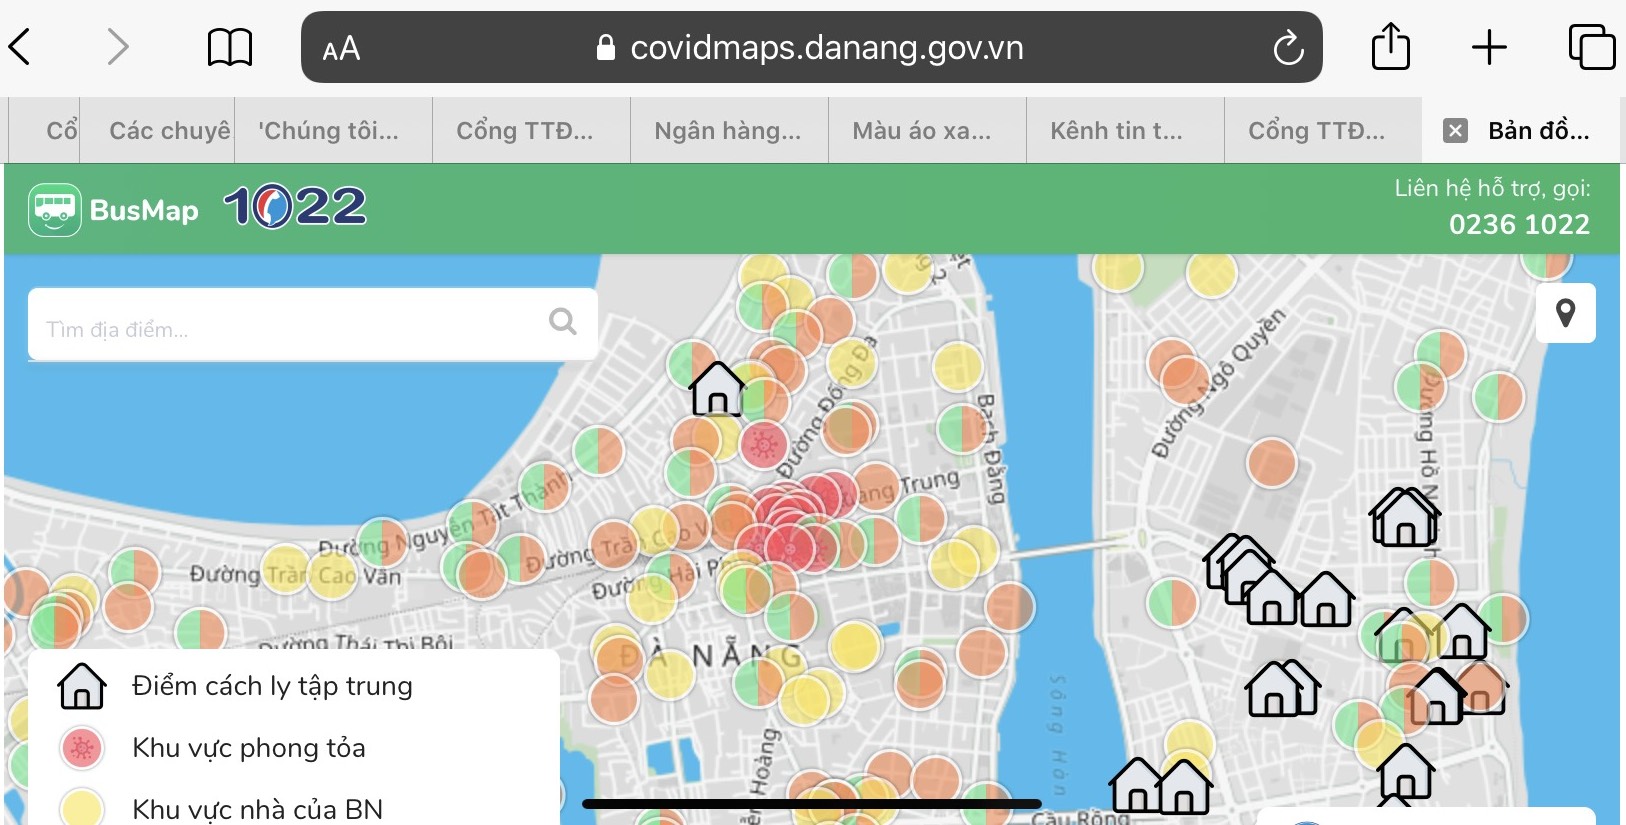 Hà Nội đã thành công trong việc kiểm soát dịch bệnh COVID-19 và bản đồ thông tin dịch tễ cập nhật đến năm 2024 sẽ giúp bạn biết được tình hình dịch bệnh tại thành phố đầy năng lượng này.